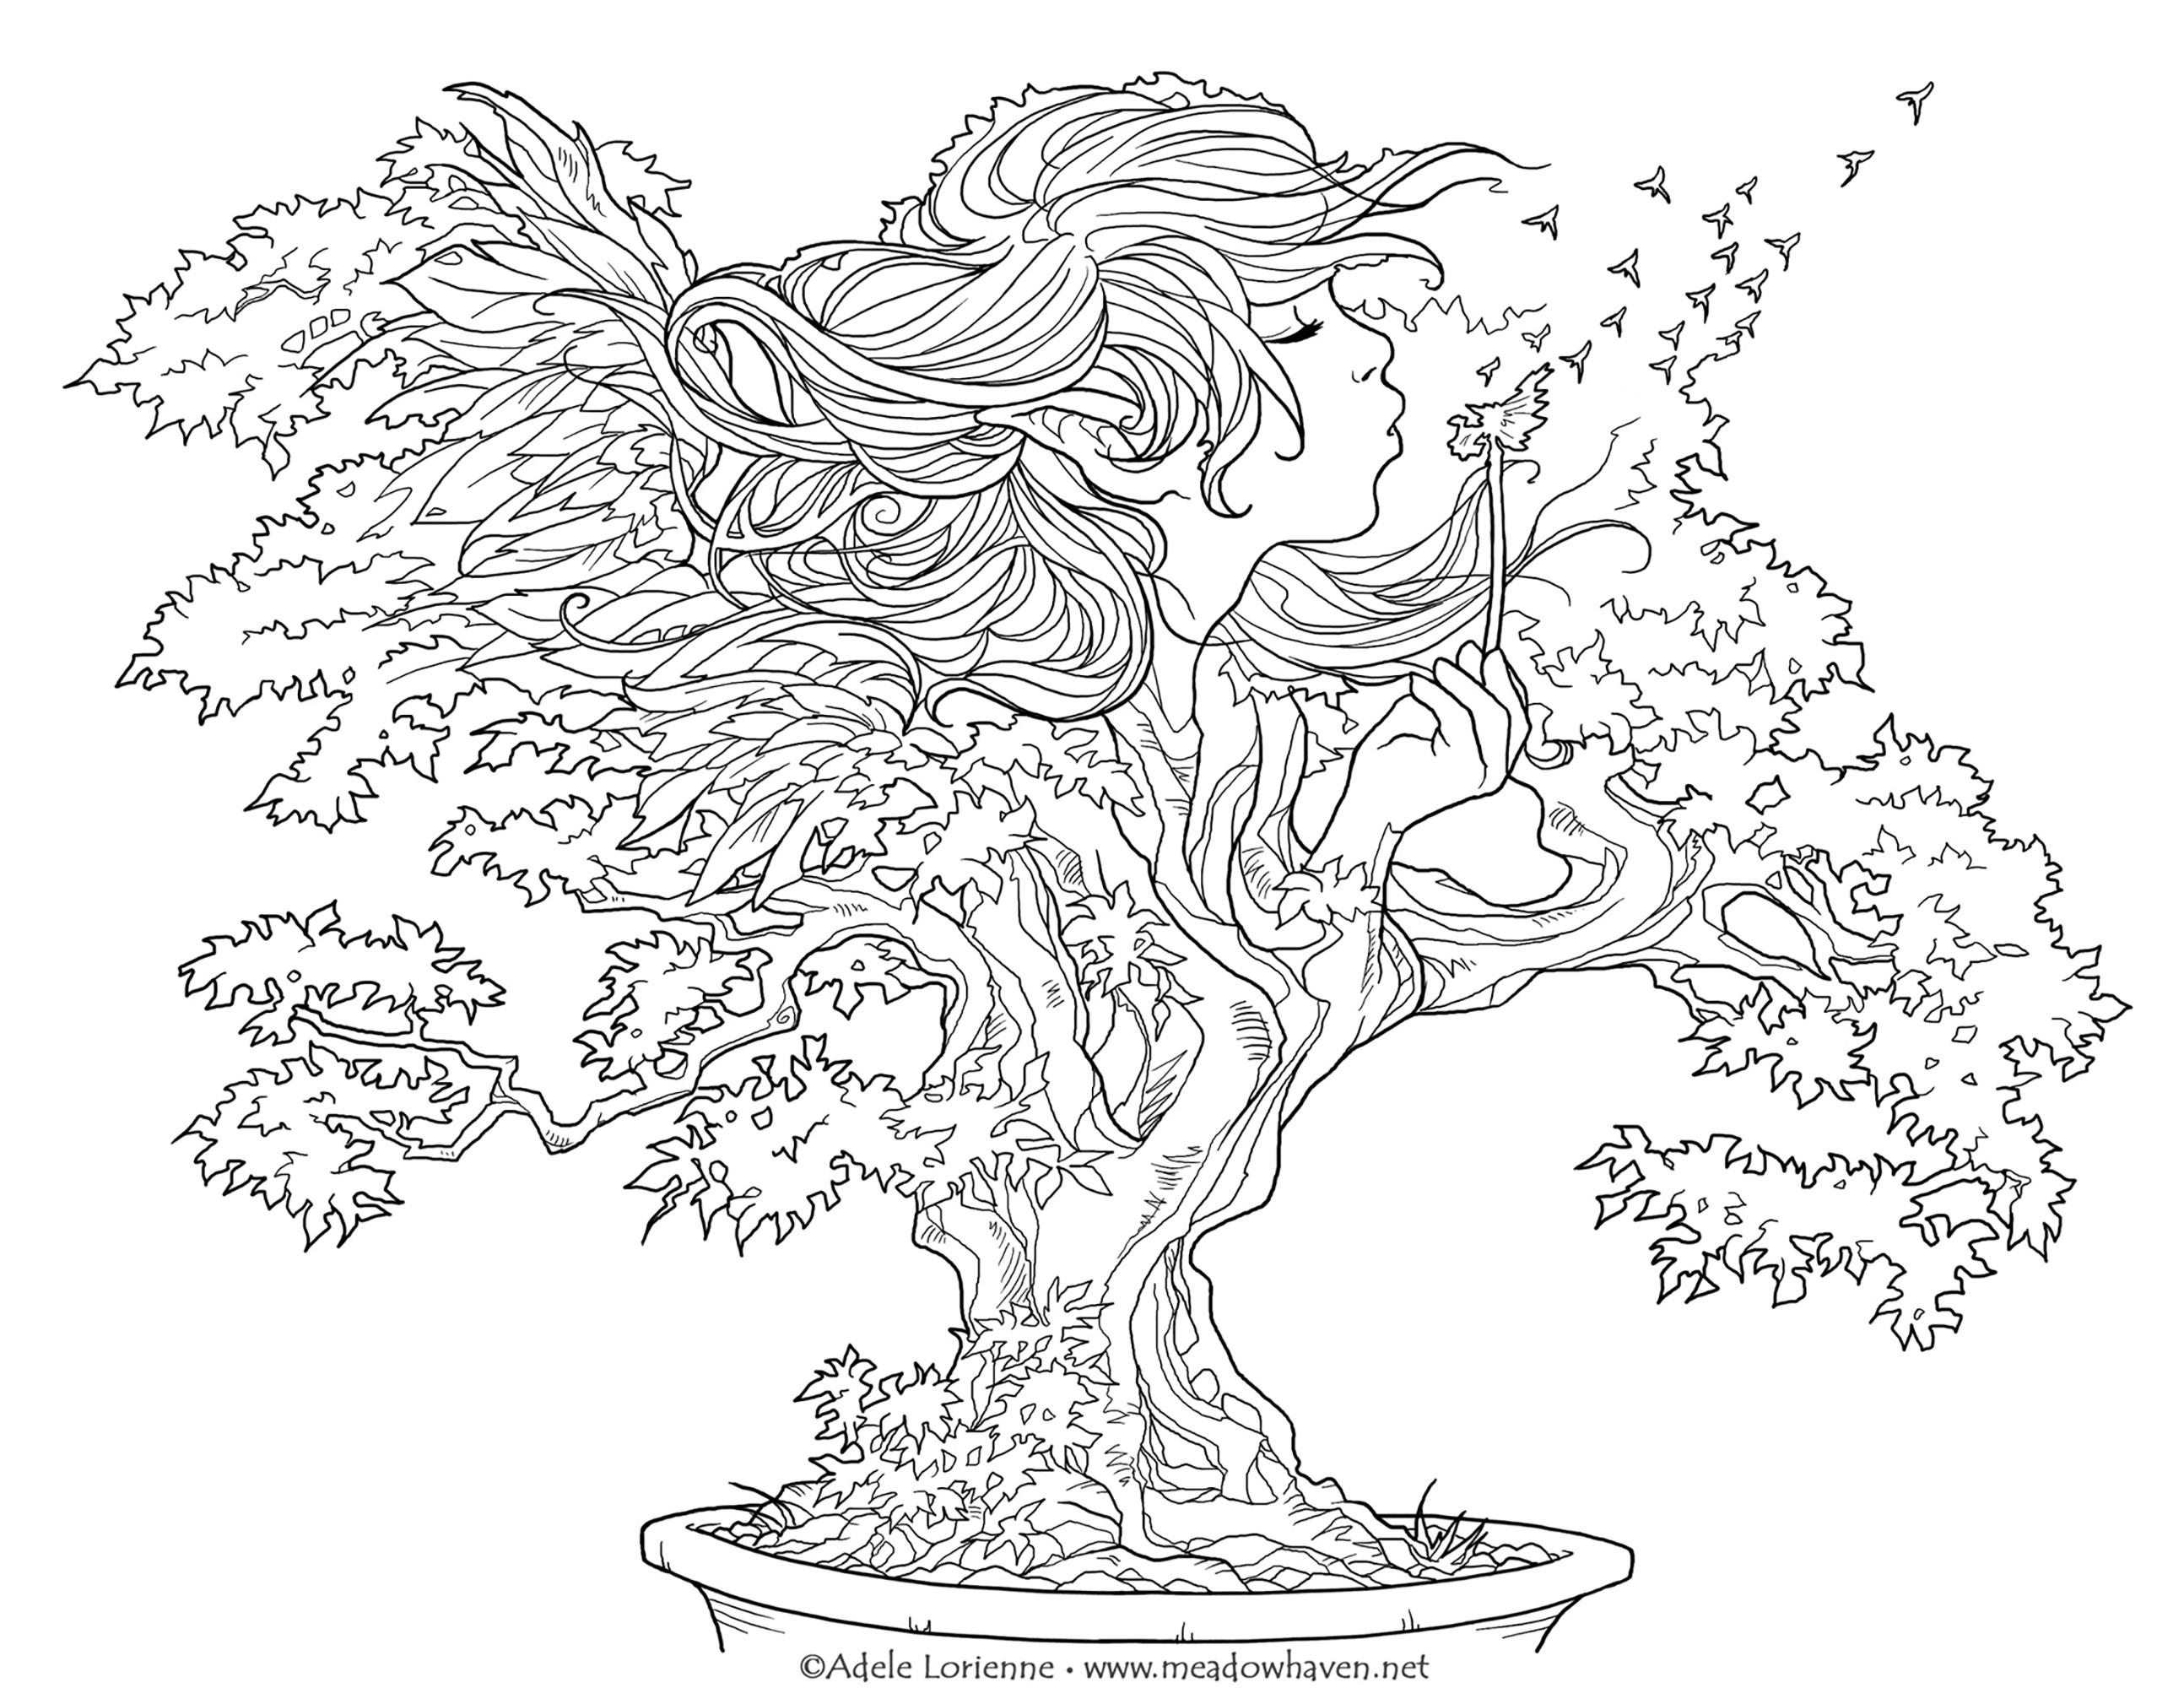 Peça um desejo e este bonsaï conceder-lho-á depois de algumas cores!, Artista : Meadowhaven